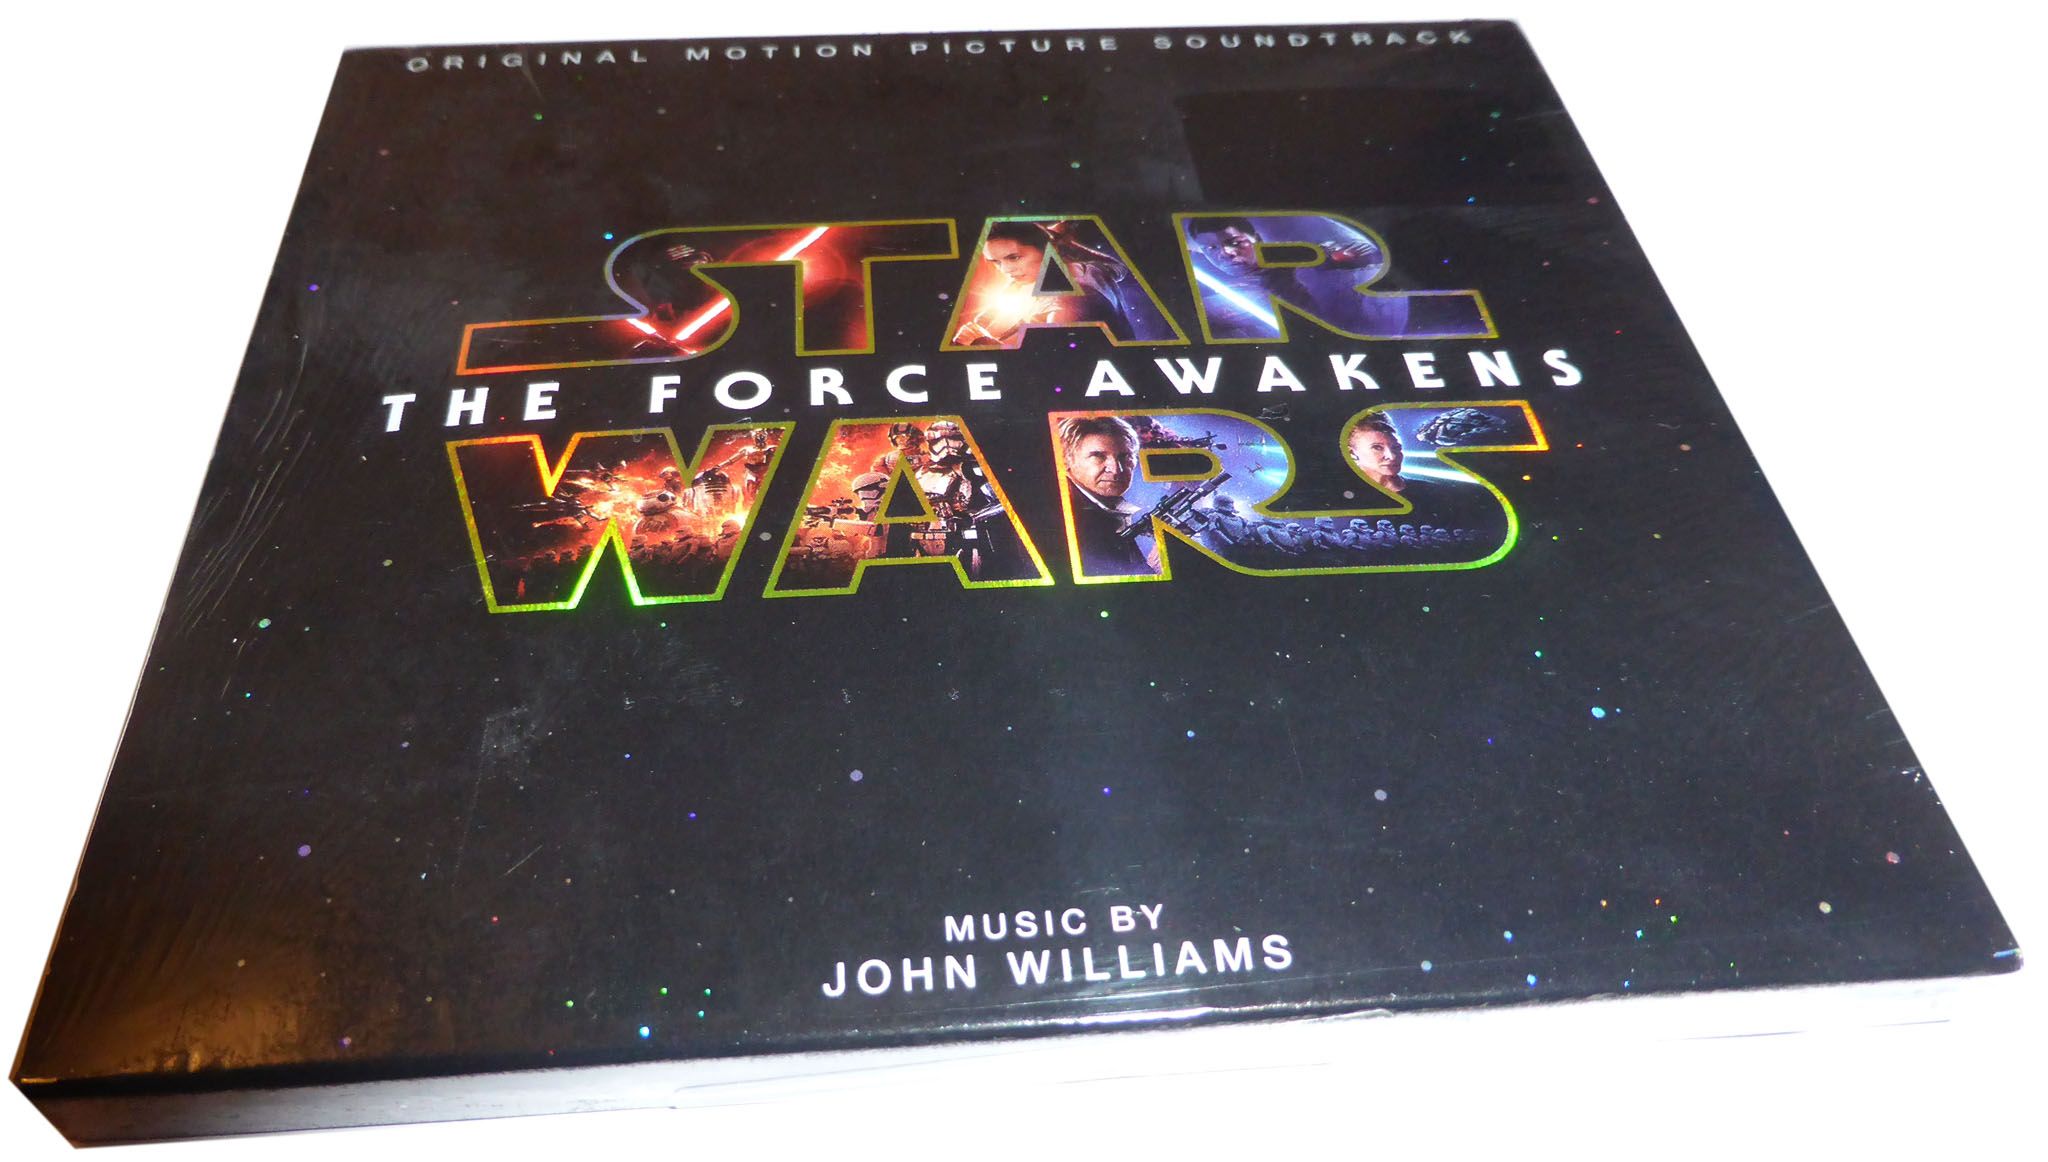 Звездный диск. Джон Уильямс Звездные войны. Композитор Джон Уильямс саундтрек Звездные войны CD диск.